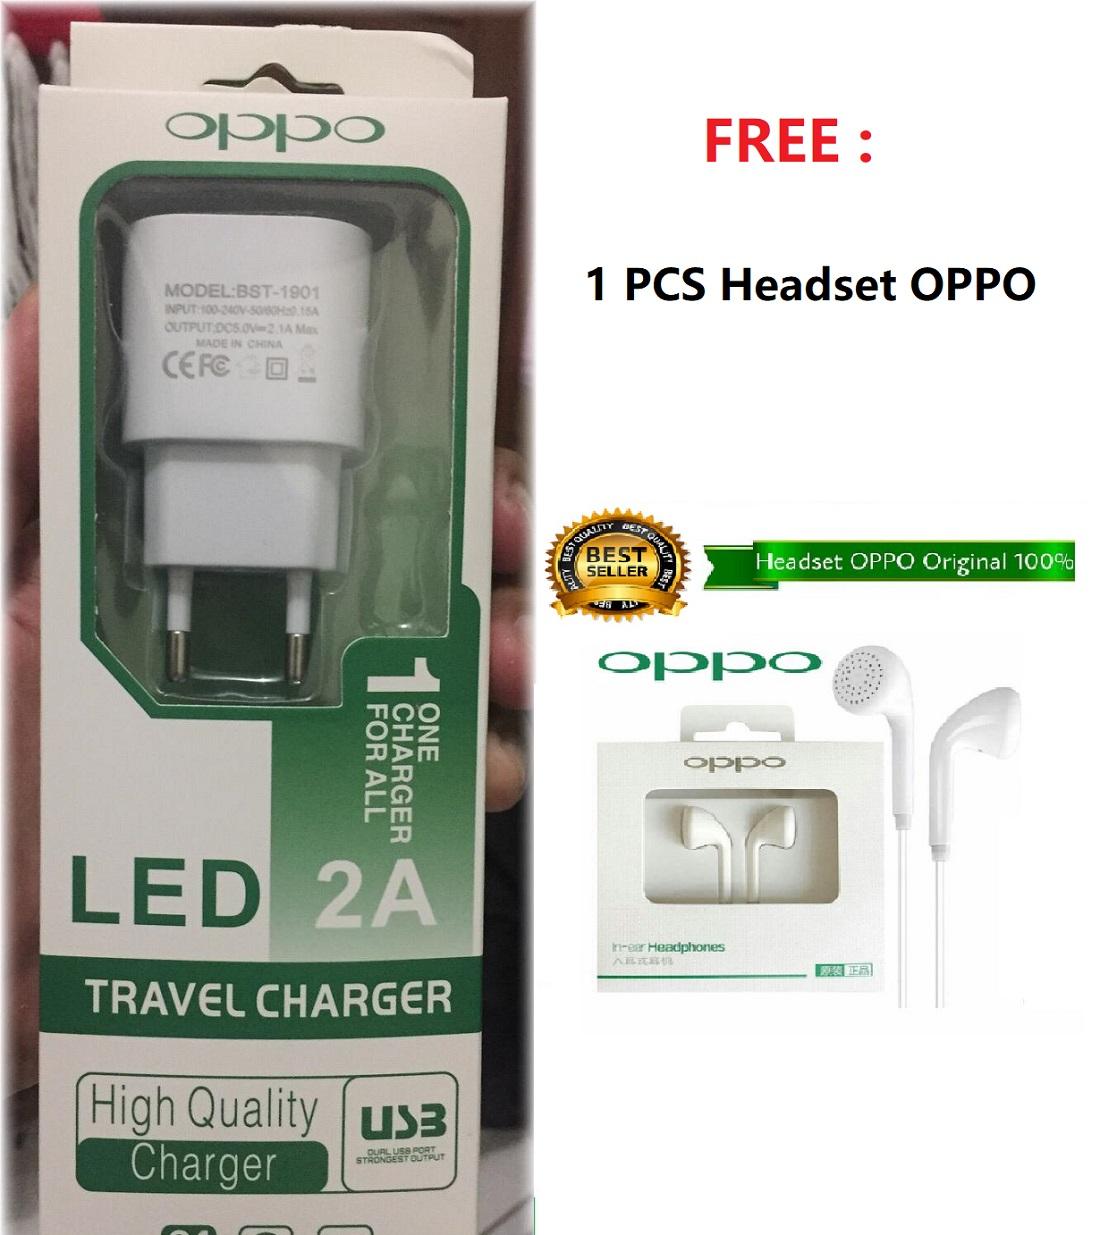 Charger Oppo LED Casan Oppo Cas Oppo Carger Oppo Gratis Headset Original Oppo Headseat Oppo_MGM27